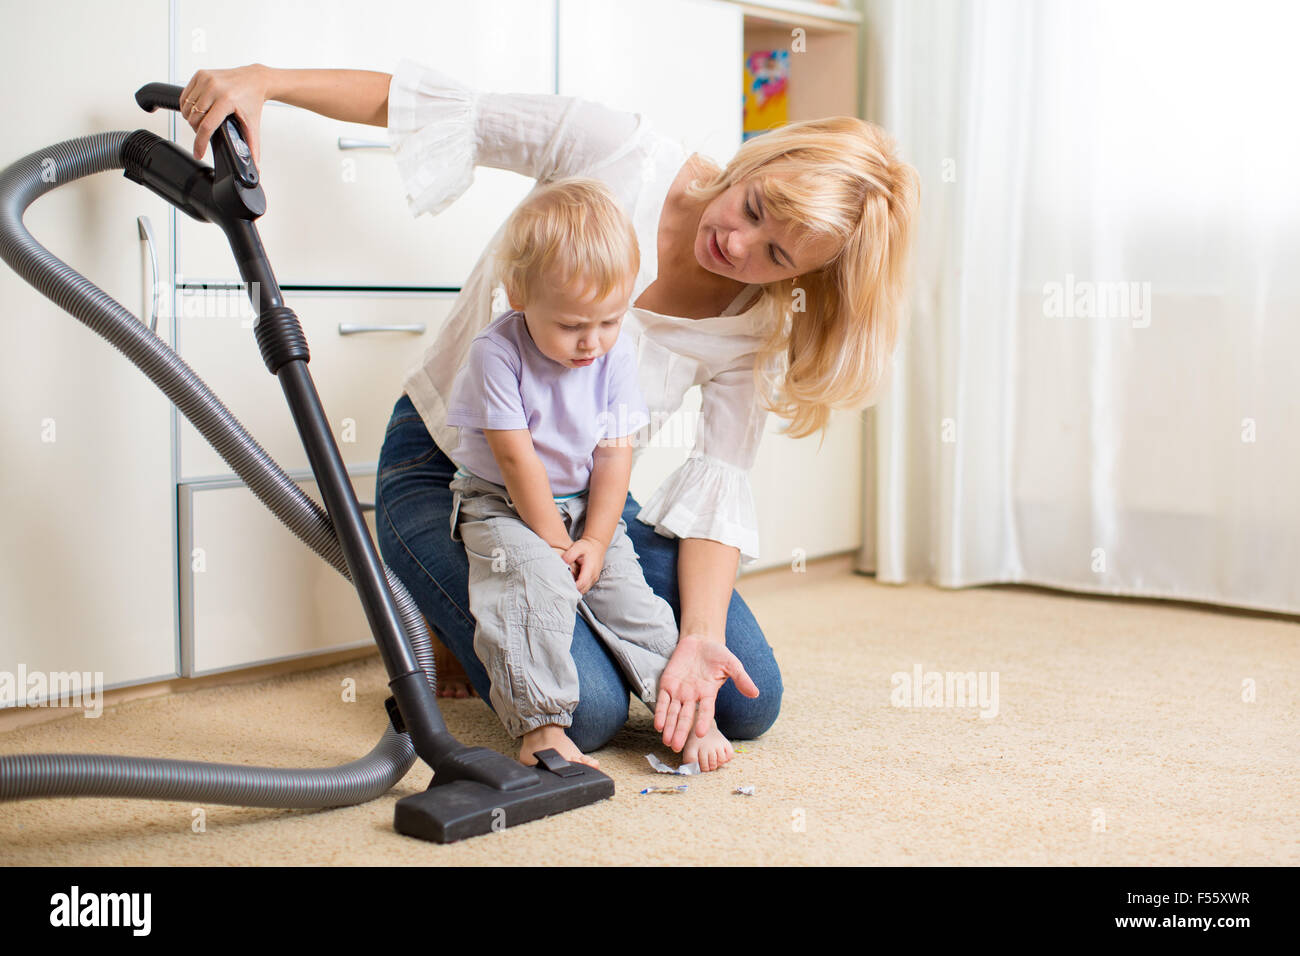 La madre enseña a su hijo hijo limpieza de habitación Foto de stock